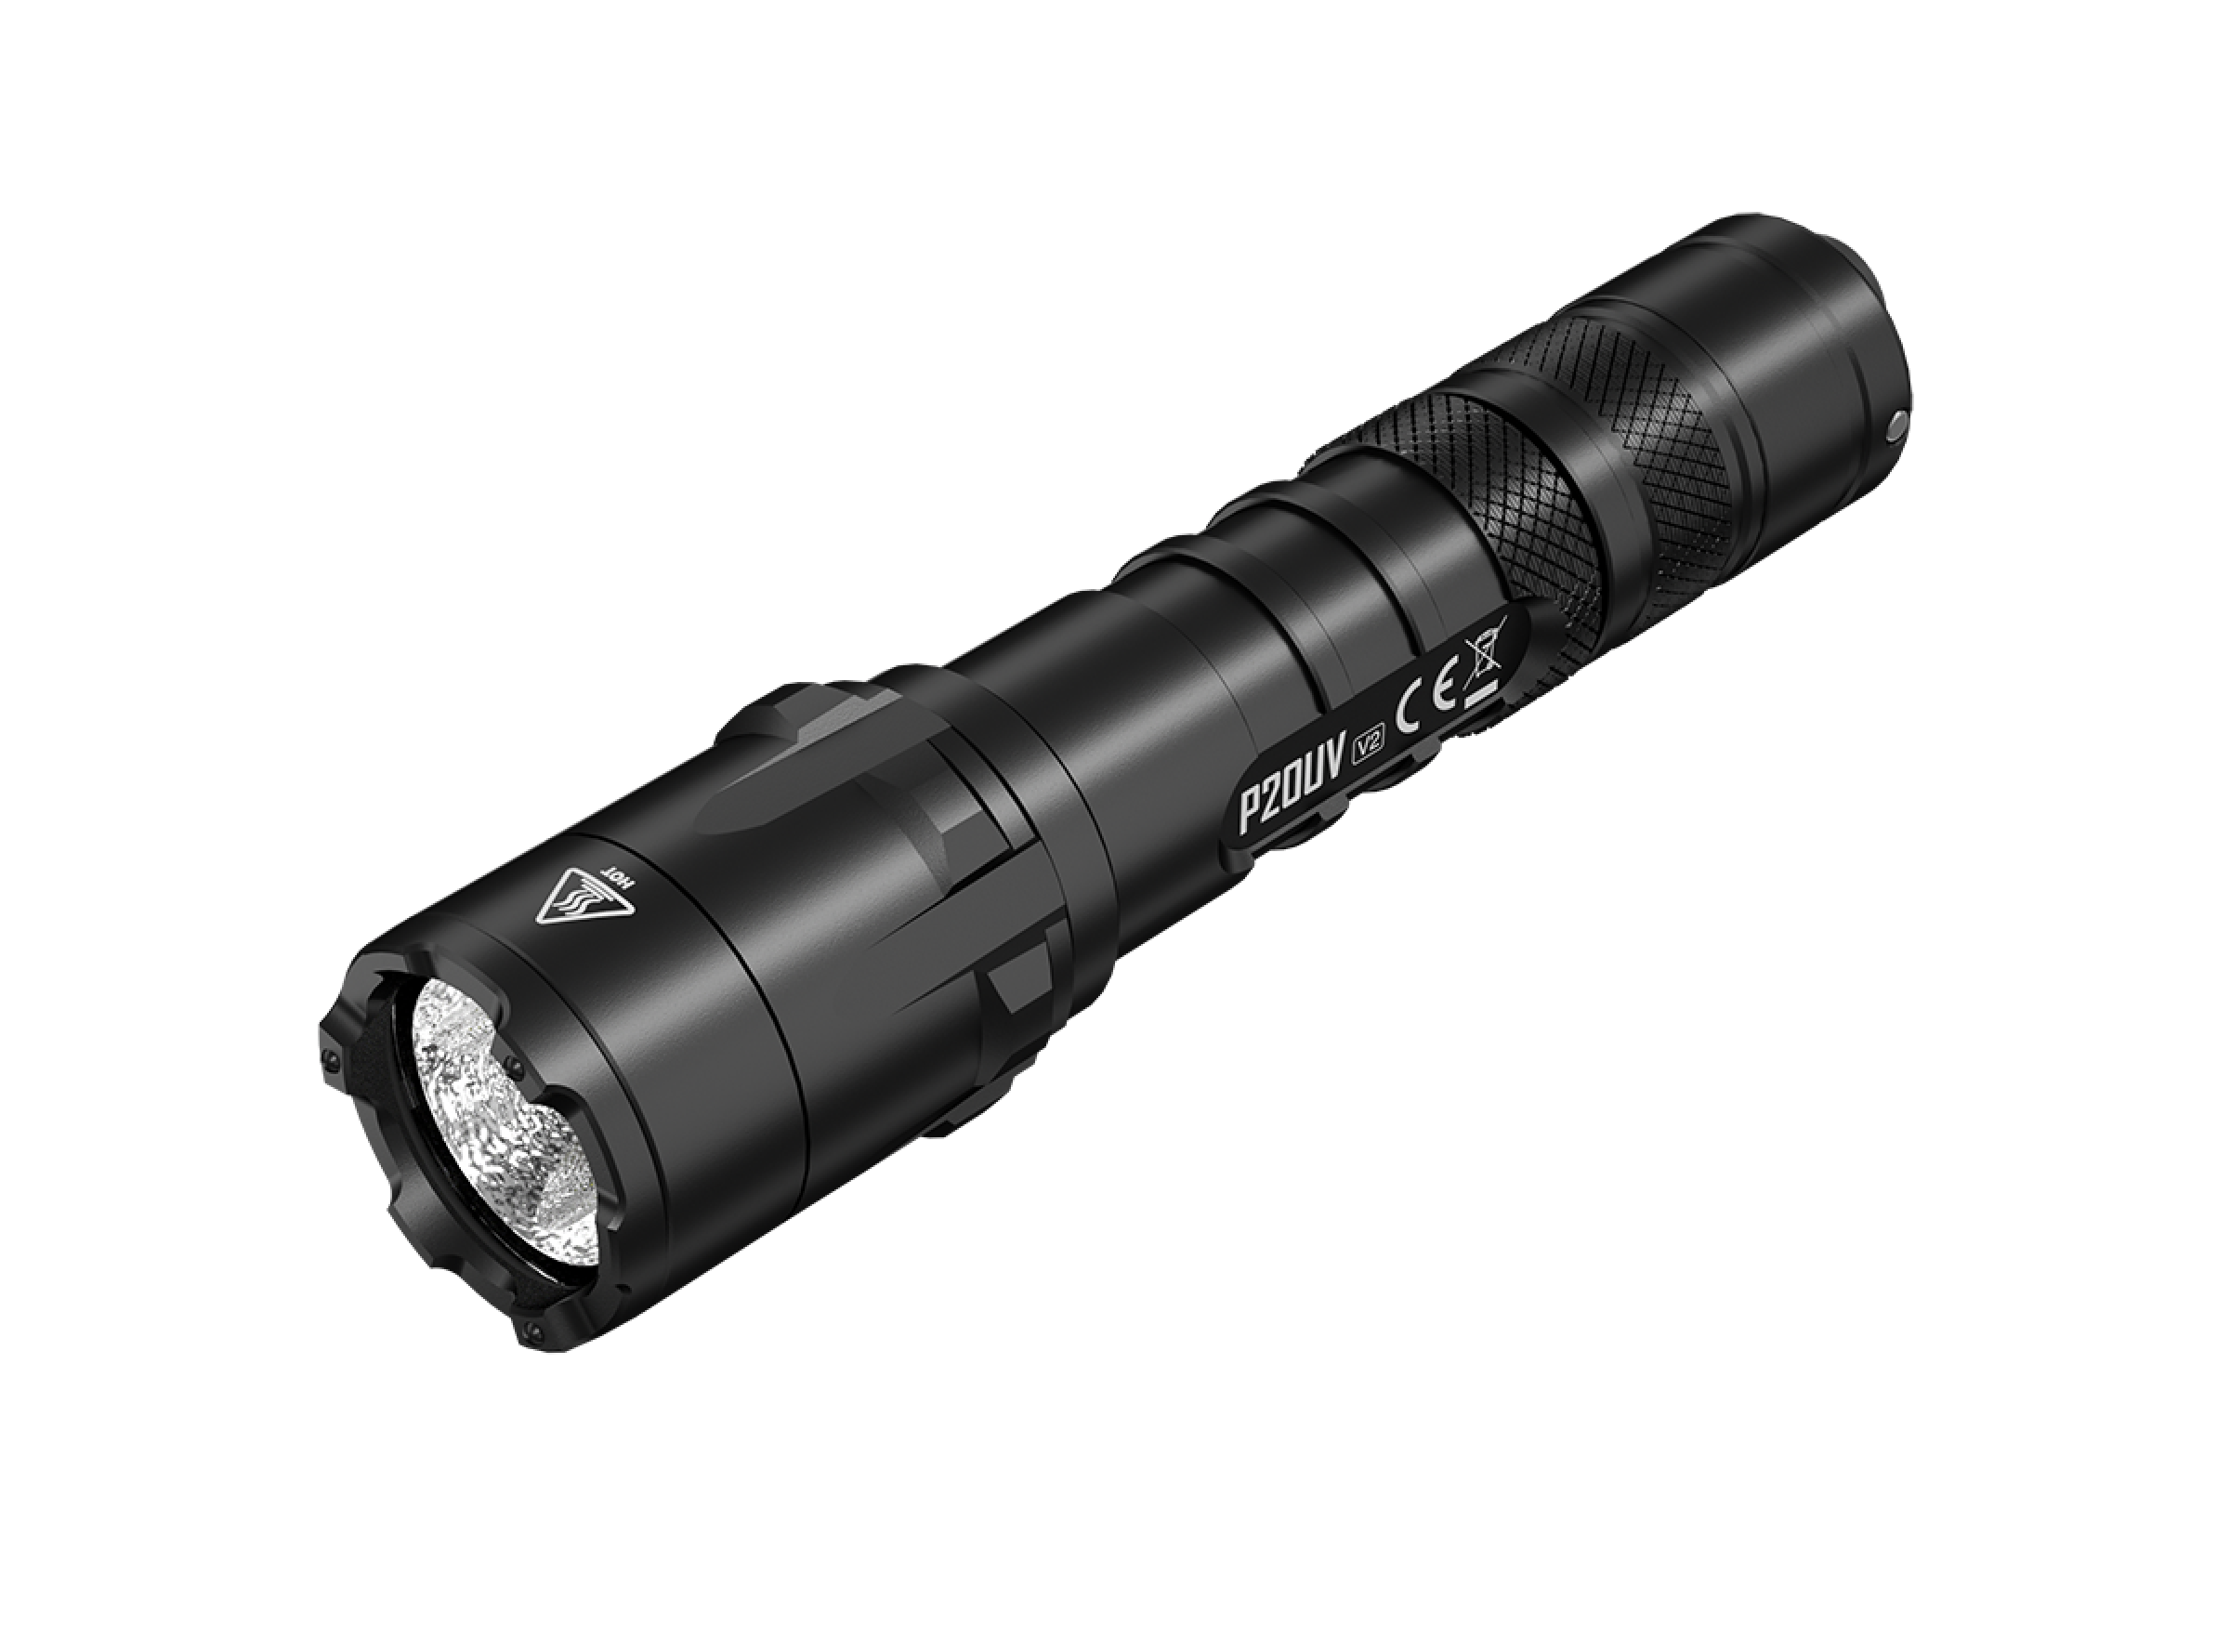 Nitecore Pro Taschenlampe P20UV V2 - 1000 Lumen